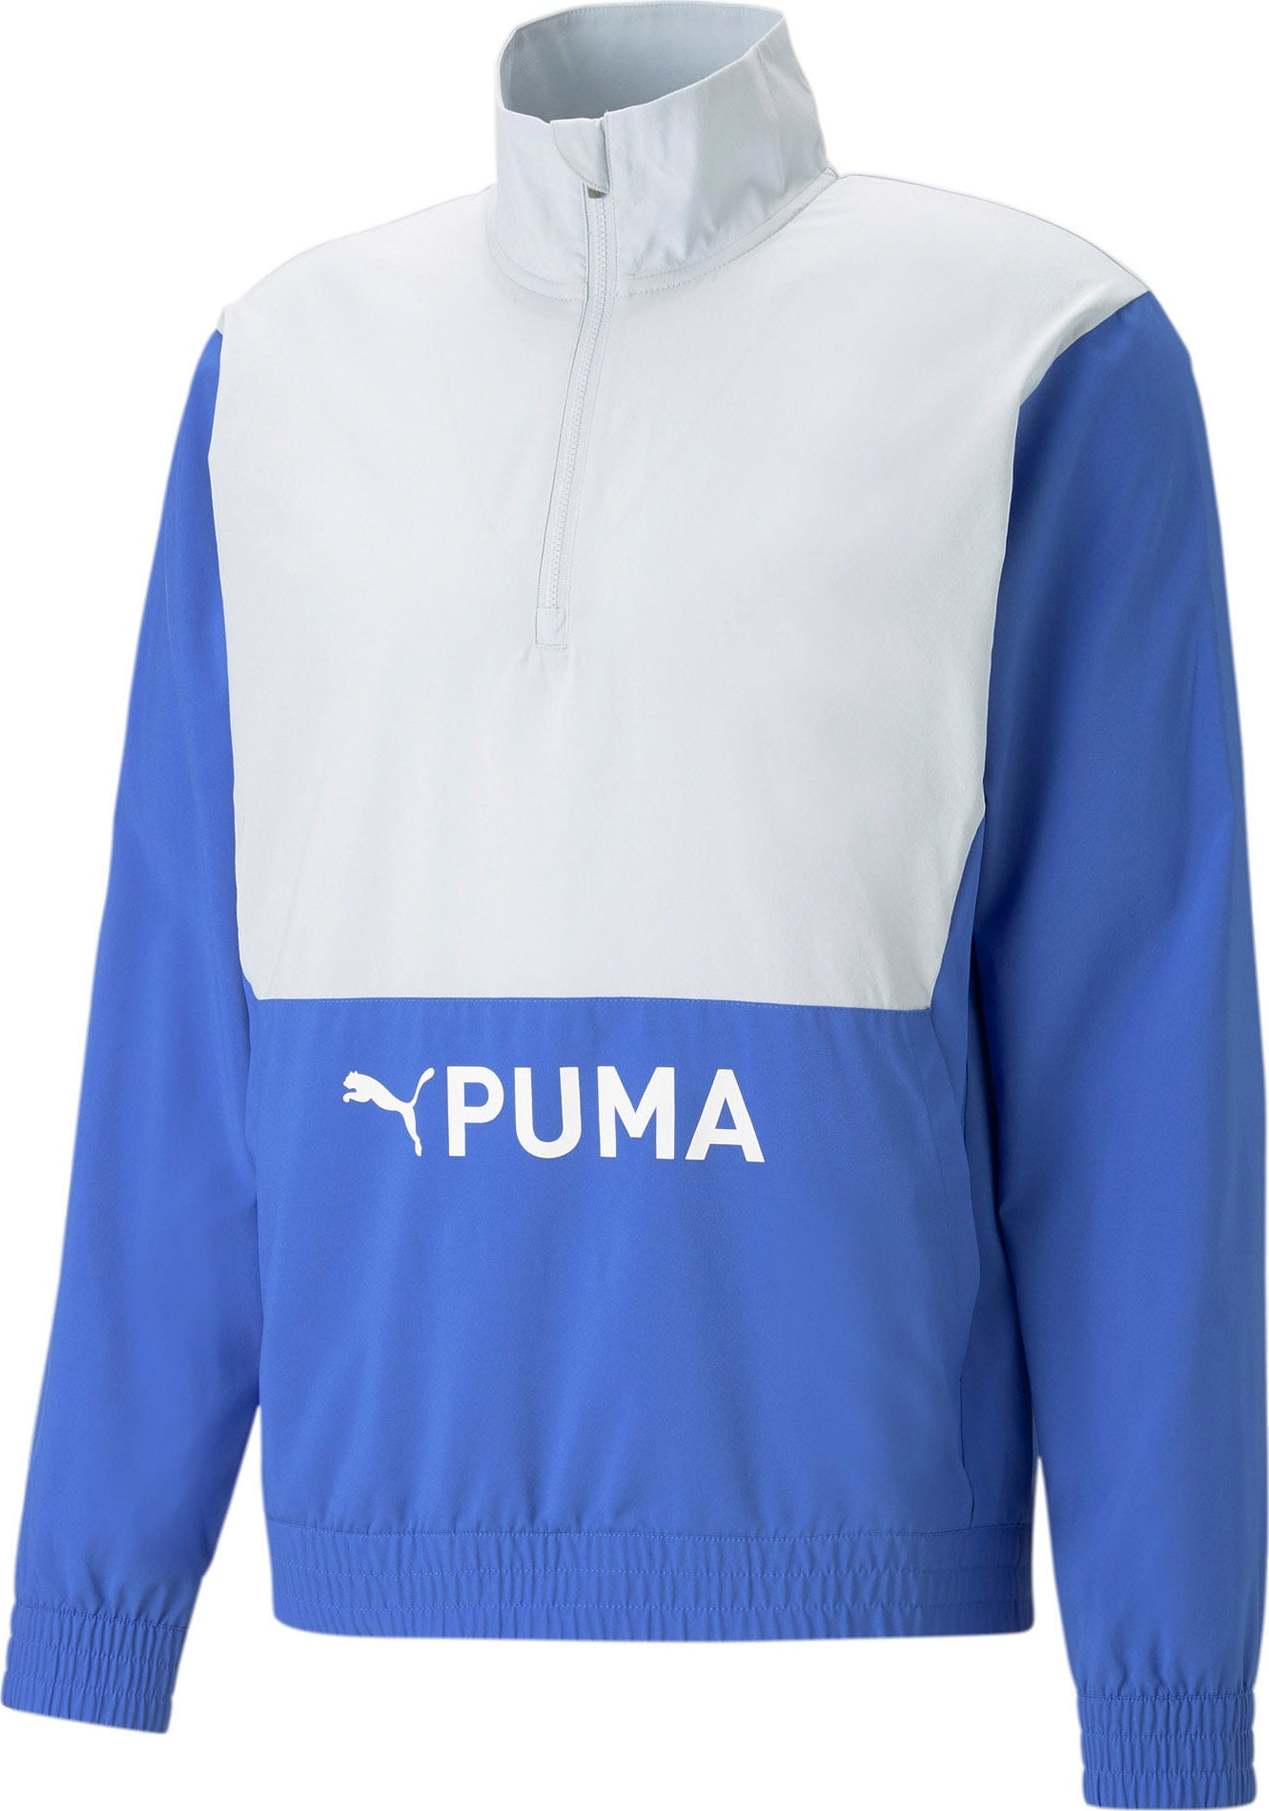 PUMA Sportovní bunda nebeská modř / bílá